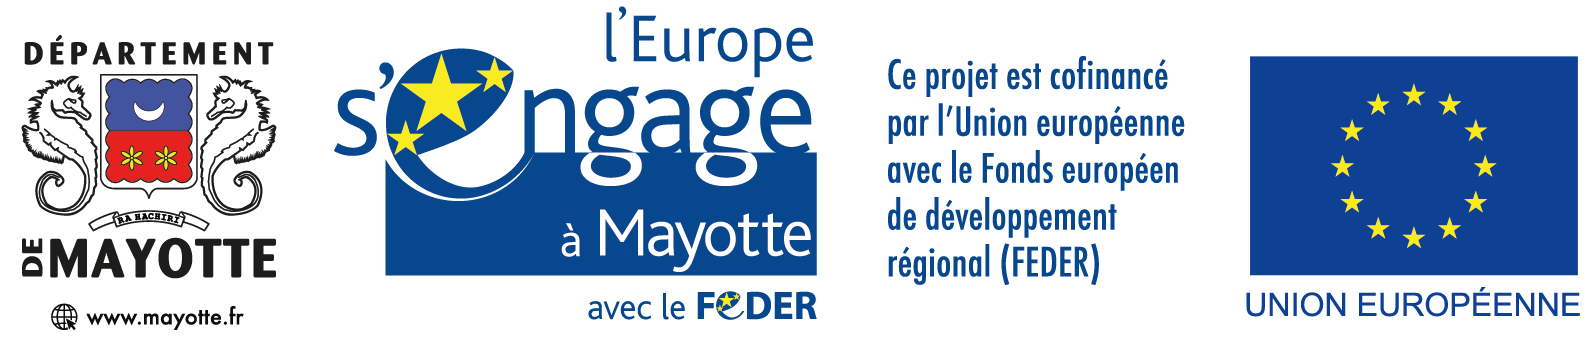 L'Europe s'engage à Mayotte avec le FEDER